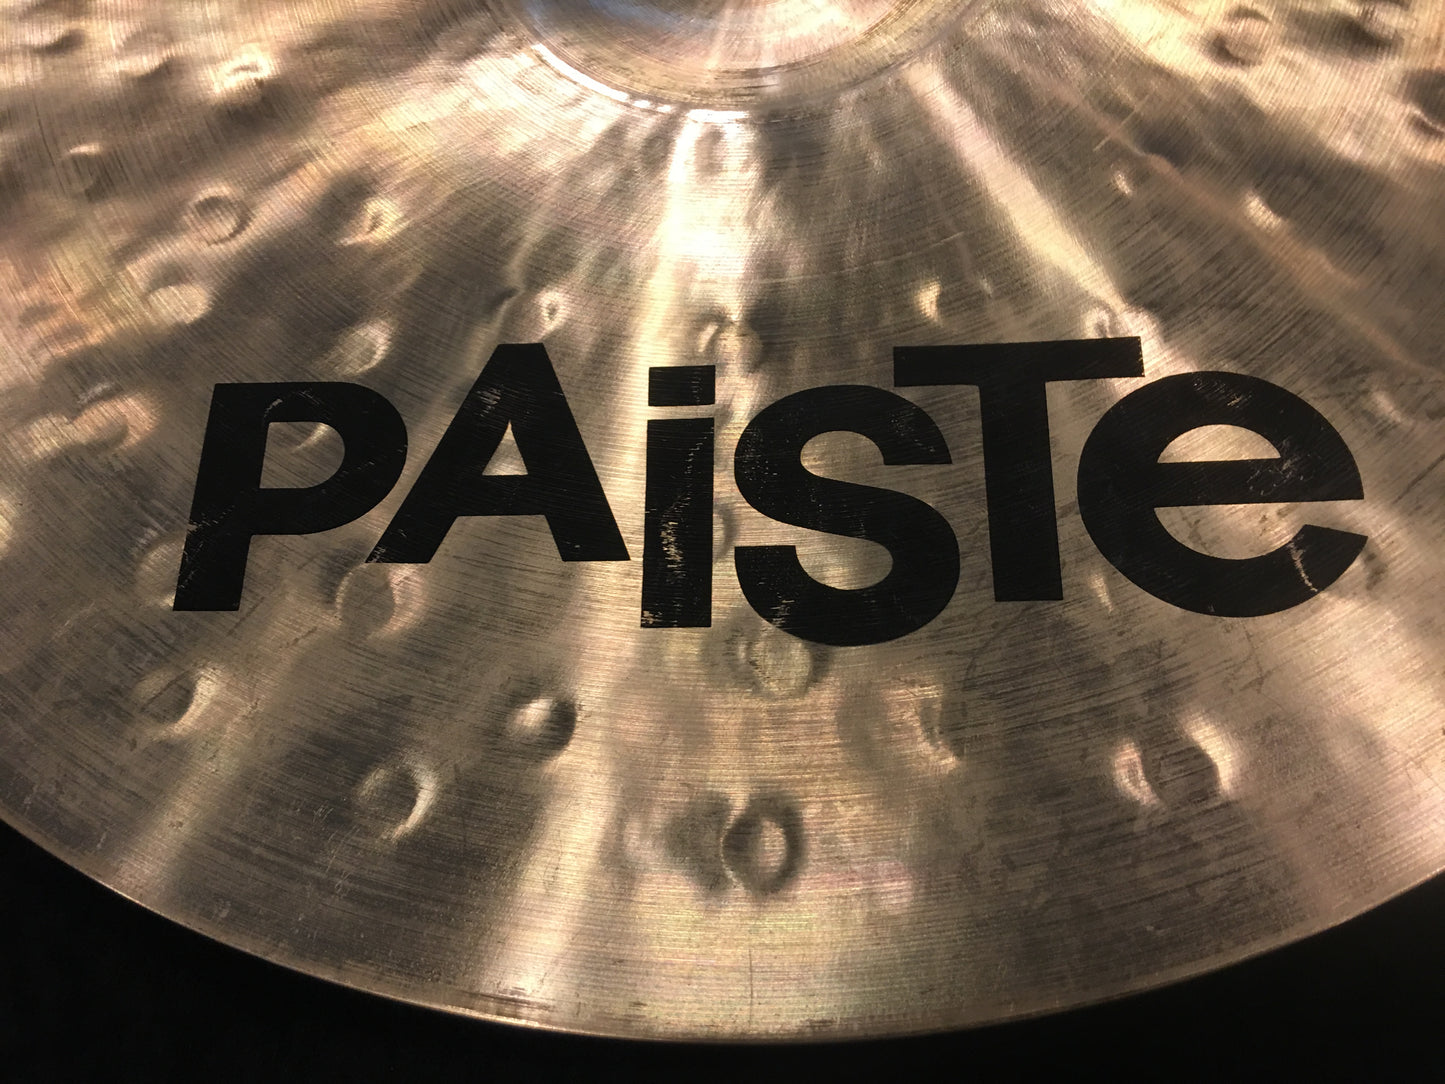 18" Paiste 1981 Sound Creation Dark Crash Cymbal 1782g #478